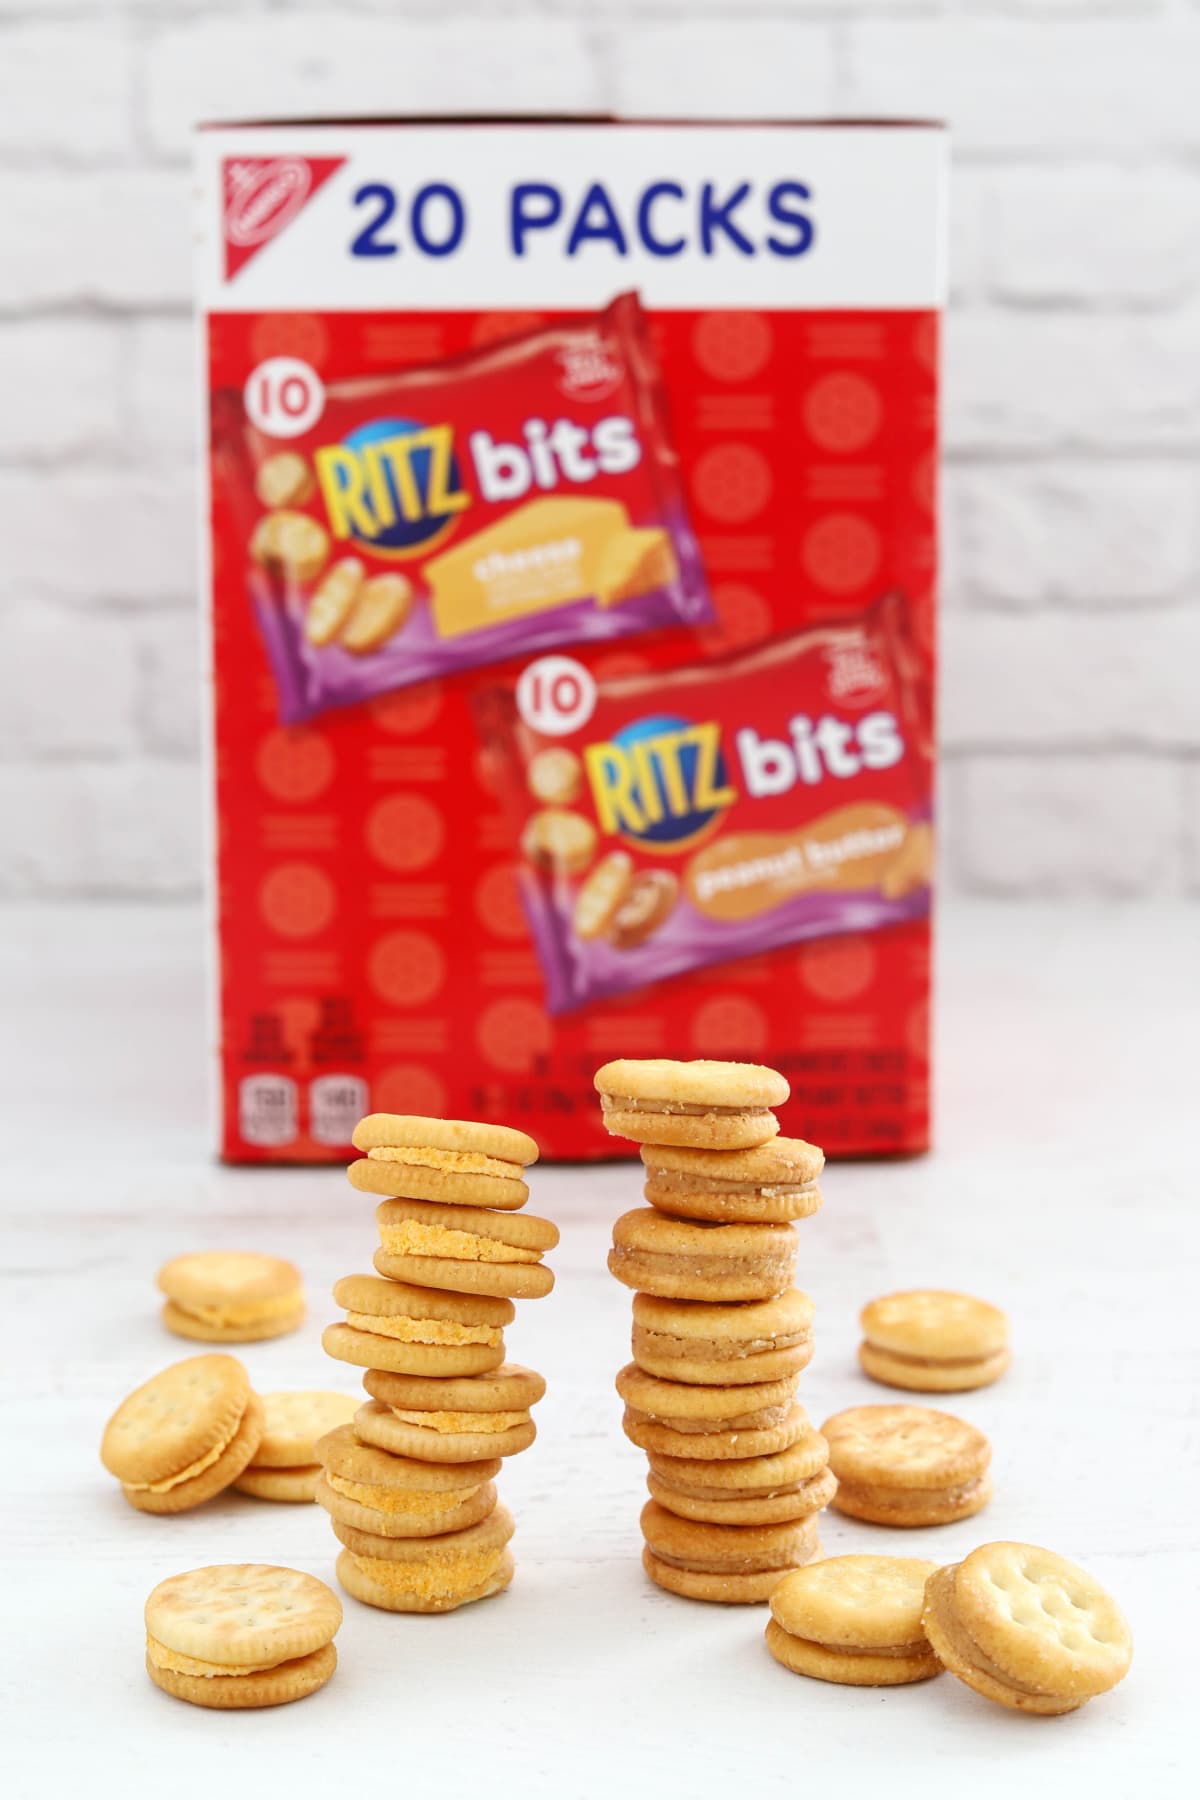 Ritz Bits Crackers in stacks